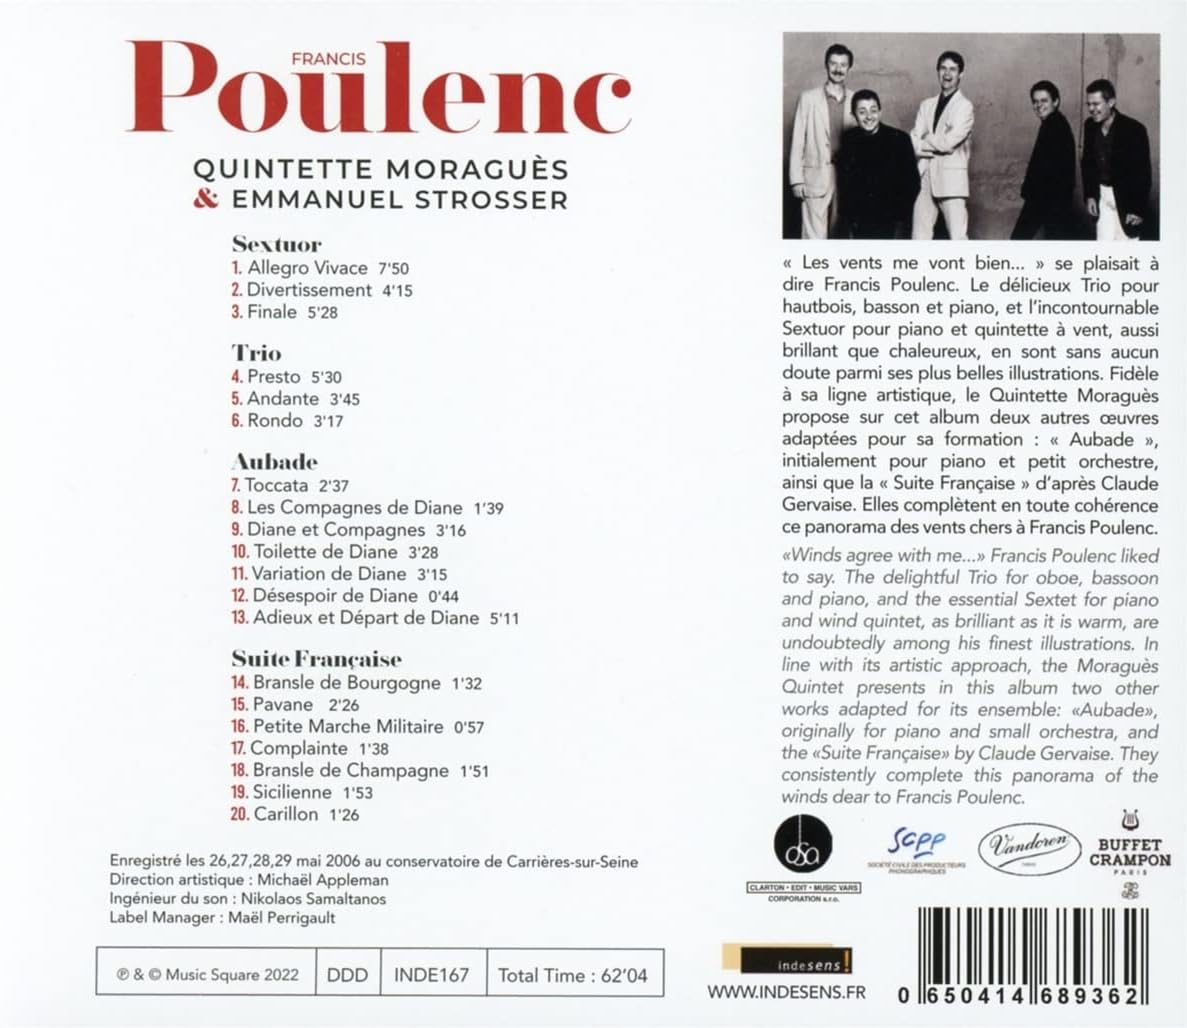 Quintette Moragues / Emmanuel Strosser 풀렝크: 육중주, 삼중주, 오바드, 프랑스 모음곡 (Quintette Moragues: Poulenc)